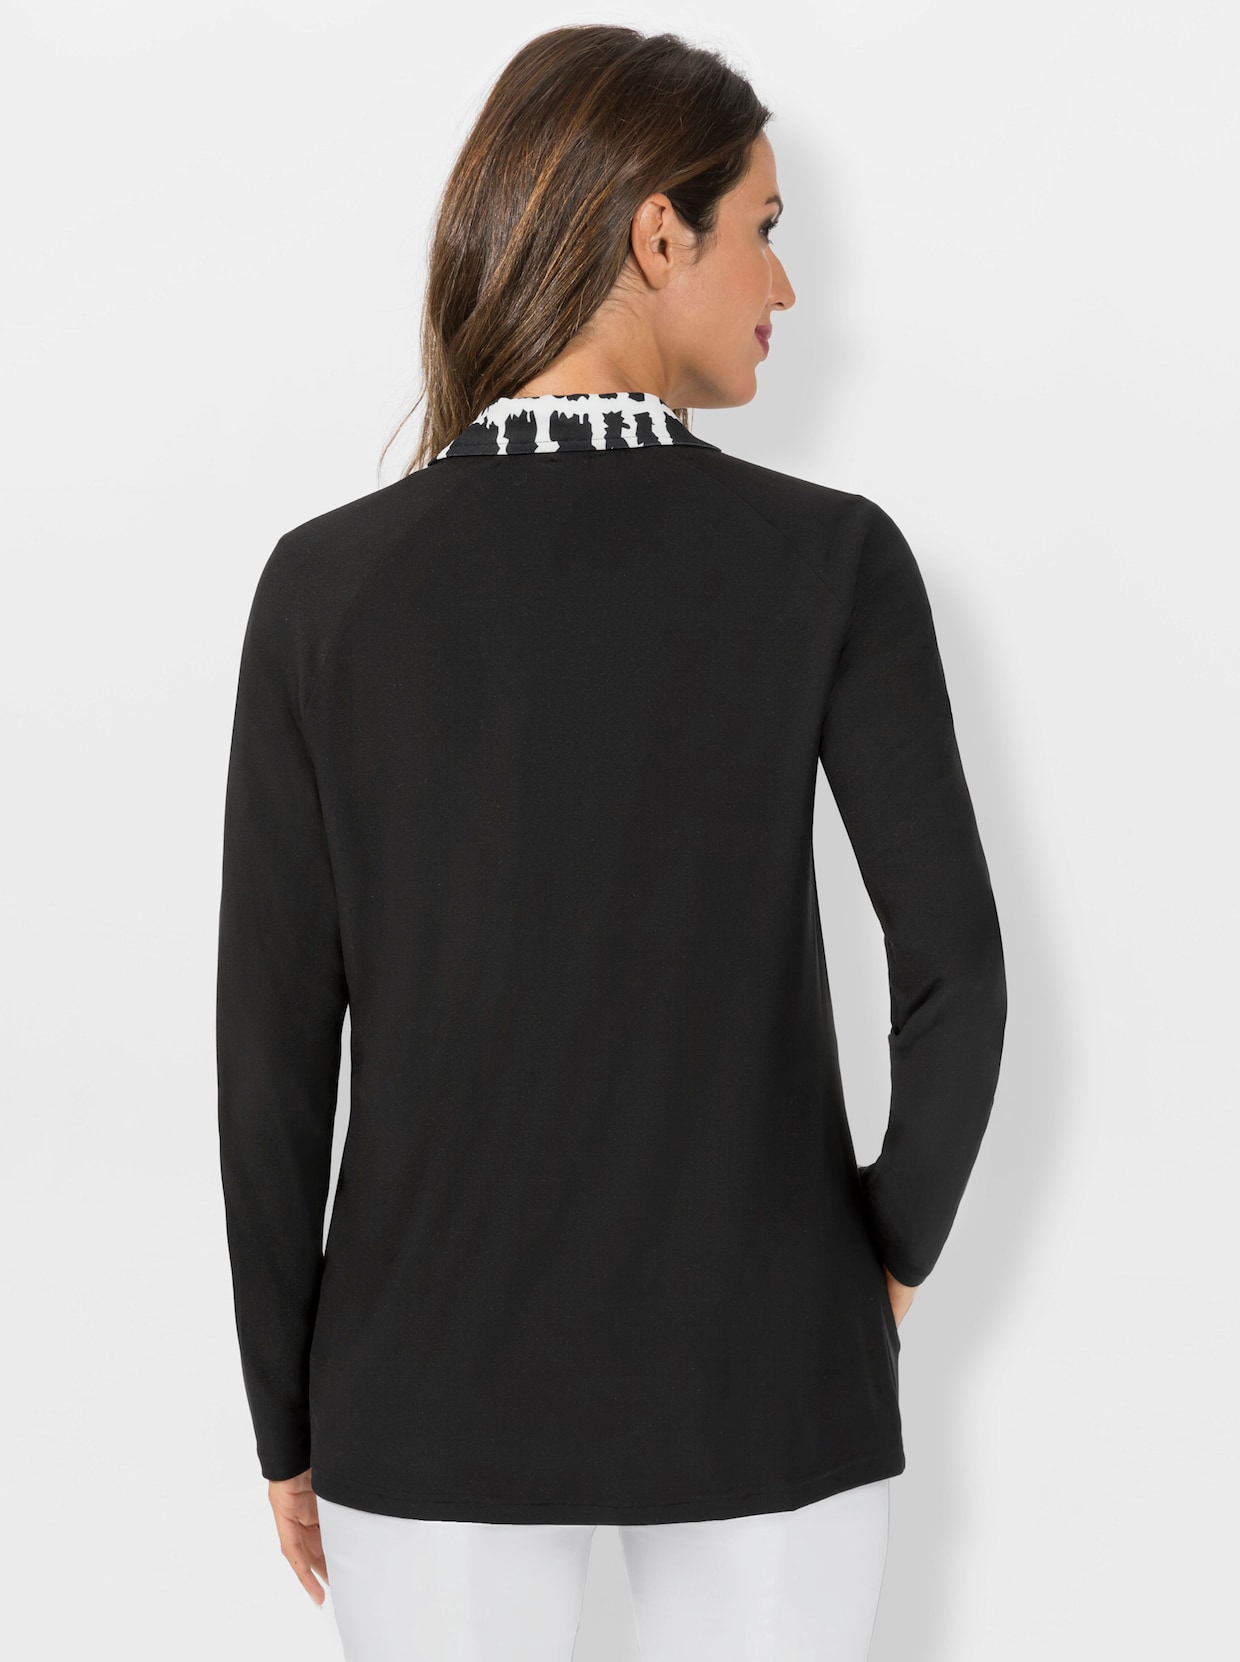 Úpletový kabátik - Black-ecru zafarbeniu krému vzorované